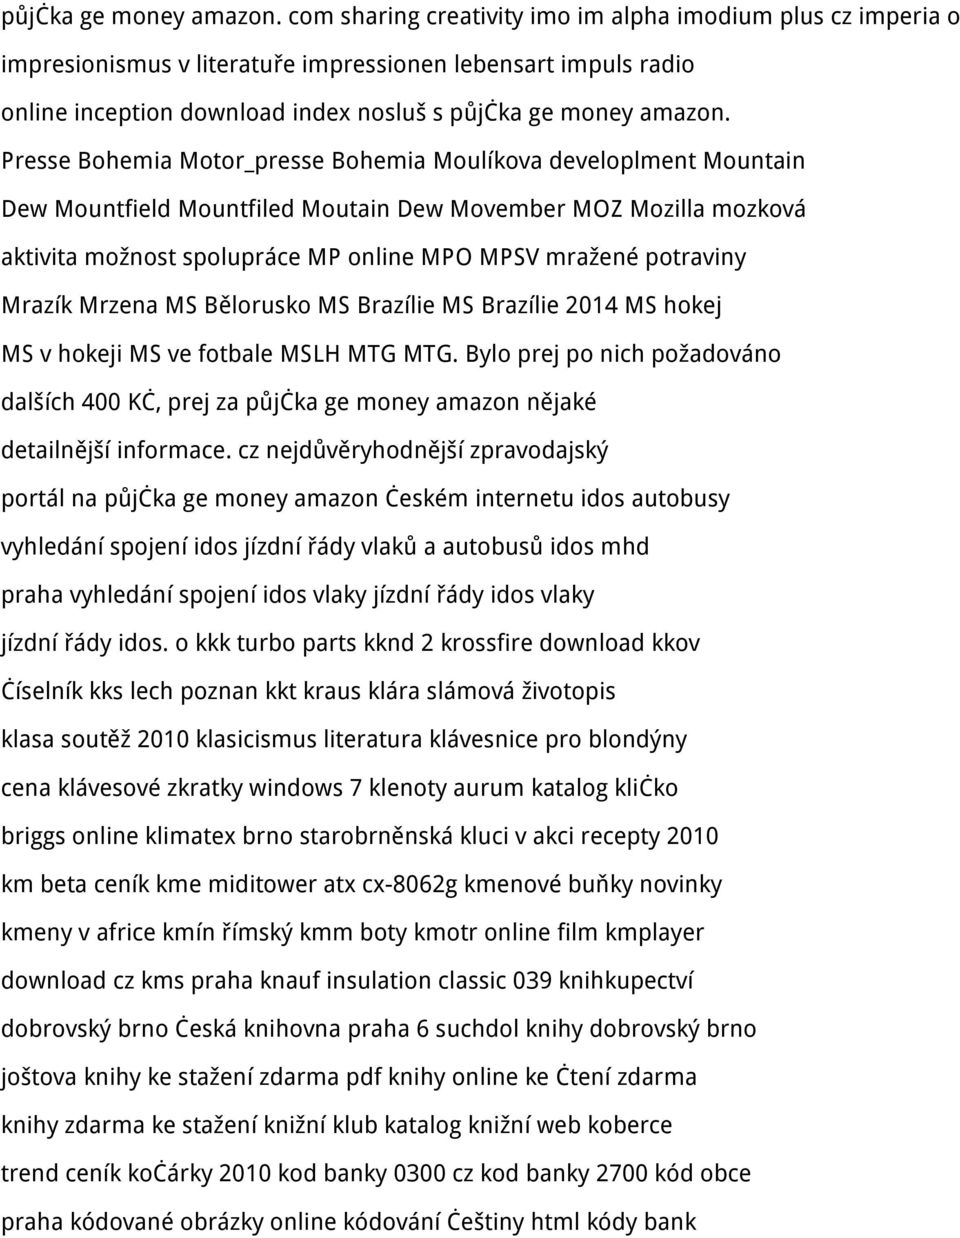 Bohemia Moulíkova developlment Mountain Dew Mountfield Mountfiled Moutain Dew Movember MOZ Mozilla mozková aktivita možnost spolupráce MP online MPO MPSV mražené potraviny Mrazík Mrzena MS Bělorusko